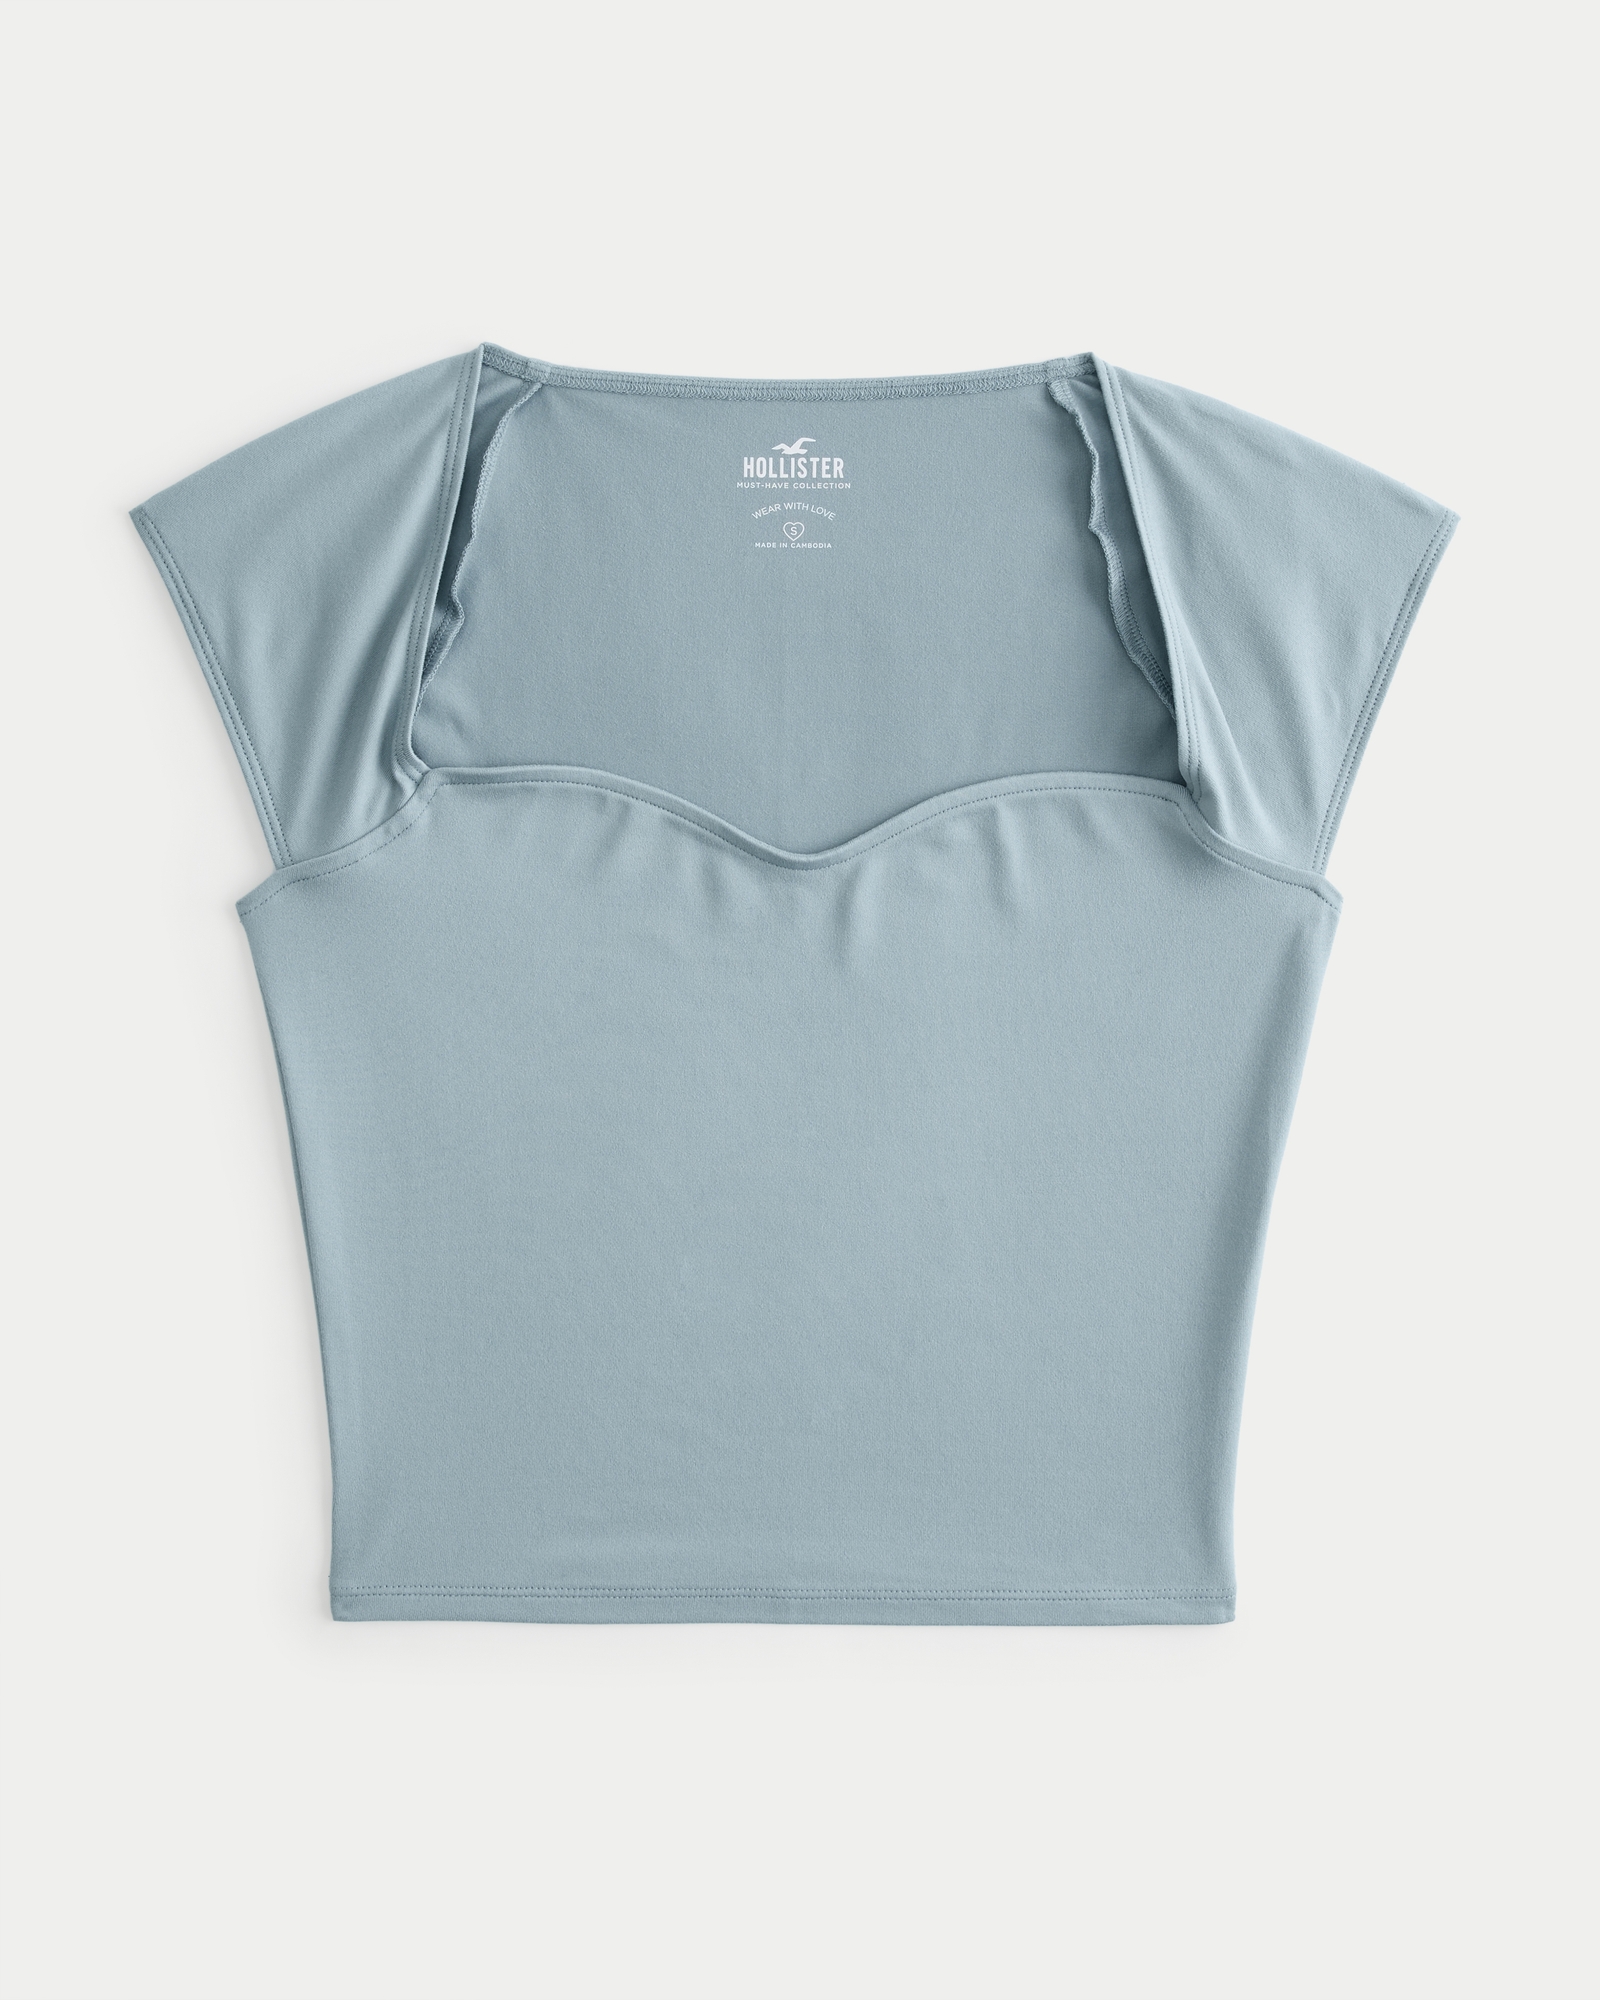 Hollister Women's Moonlight Beach Long Sleeve T-shirt Small Gray 